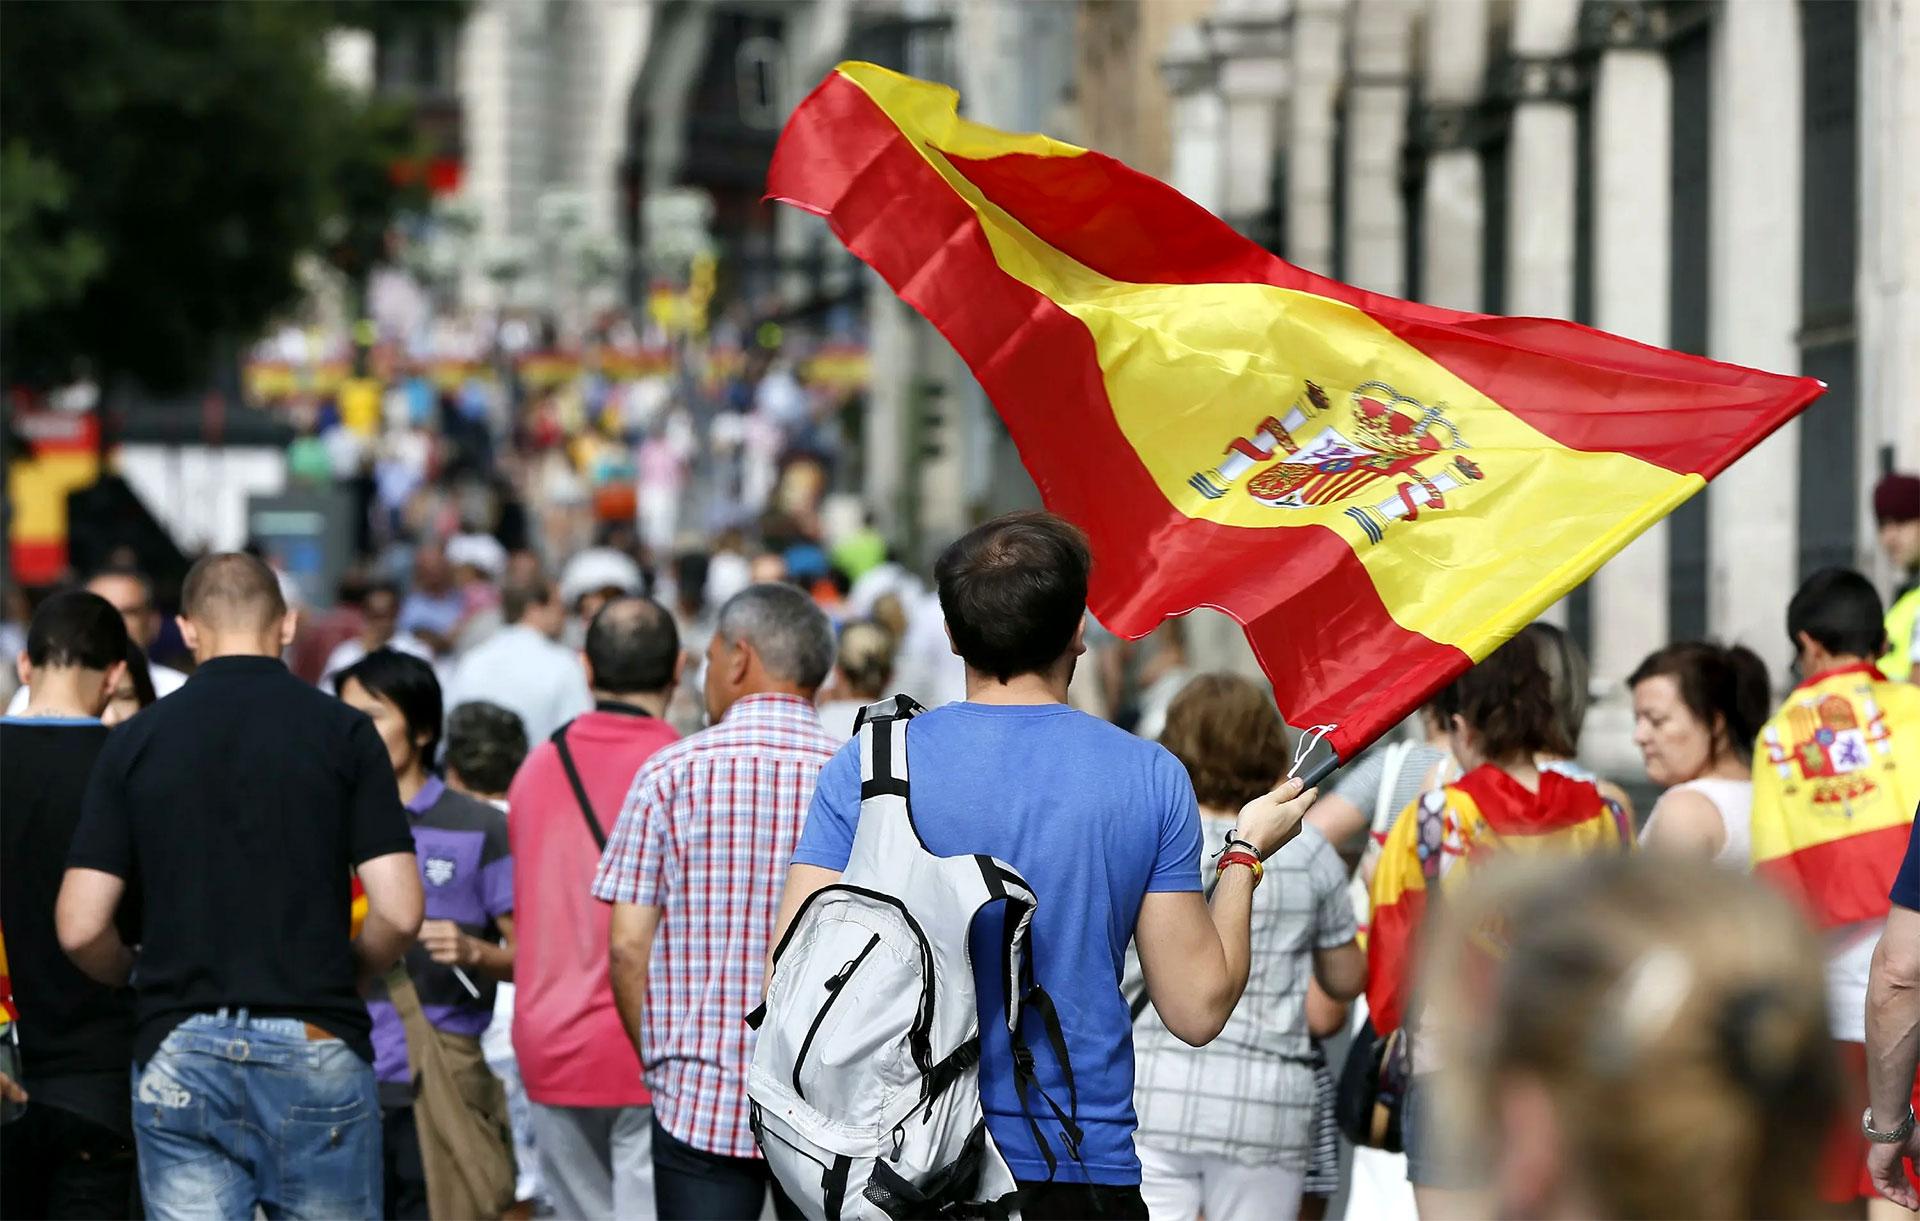 Иммиграция в испанию — бизнес, учёба или покупка недвижимости: отзывы и советы — как переехать жить в испанию